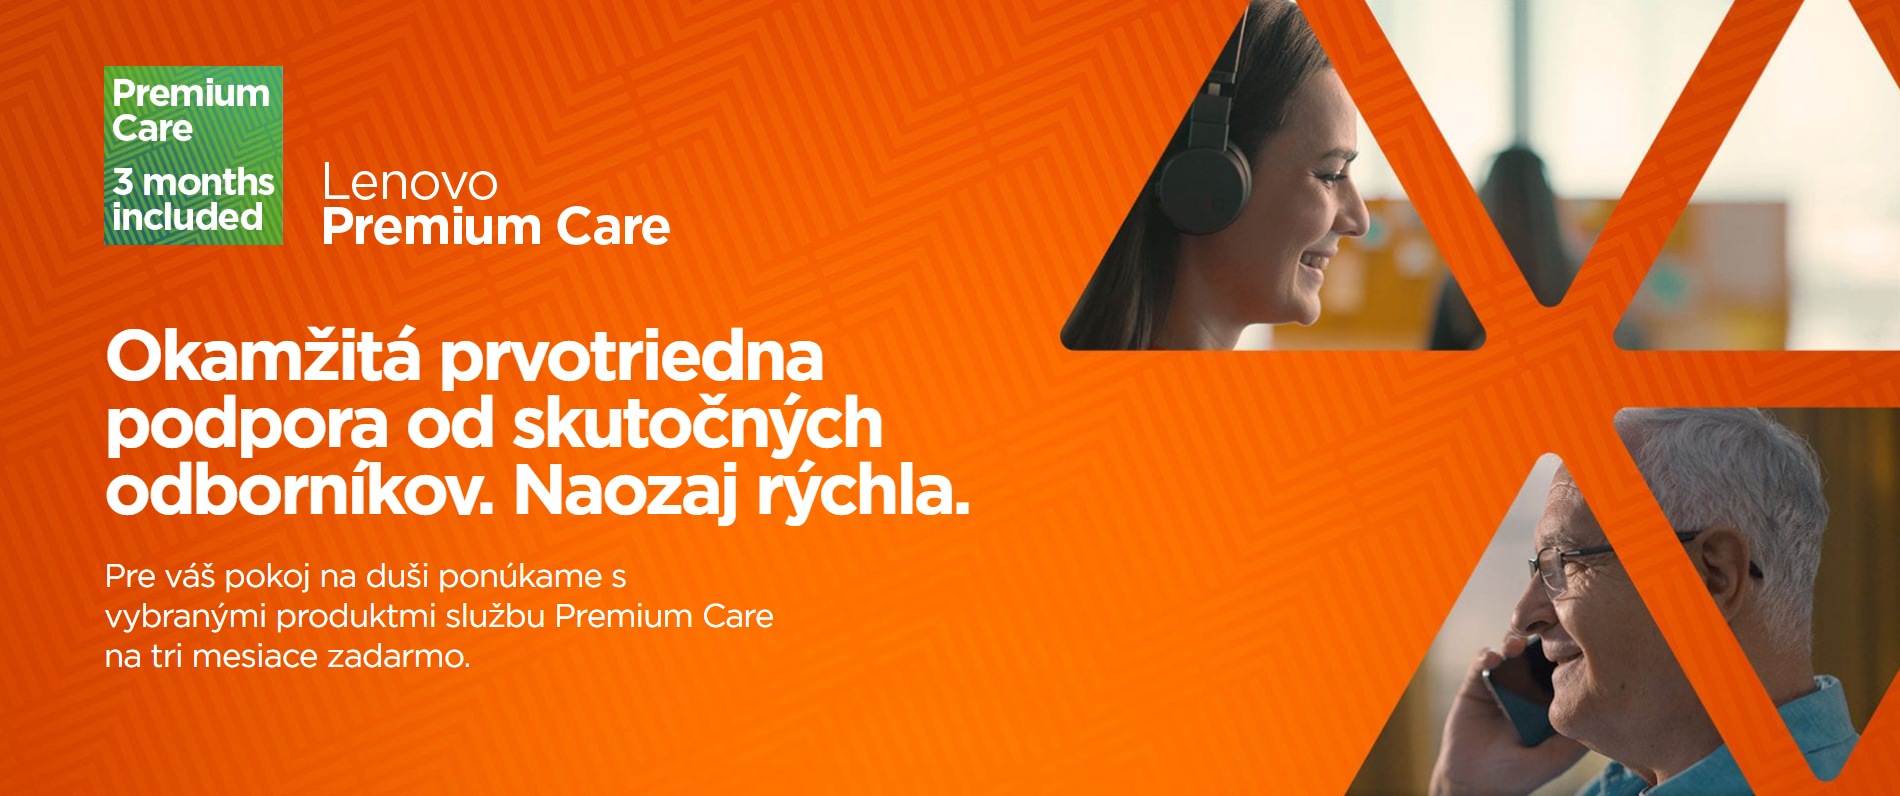 lenovo_premium_care_3